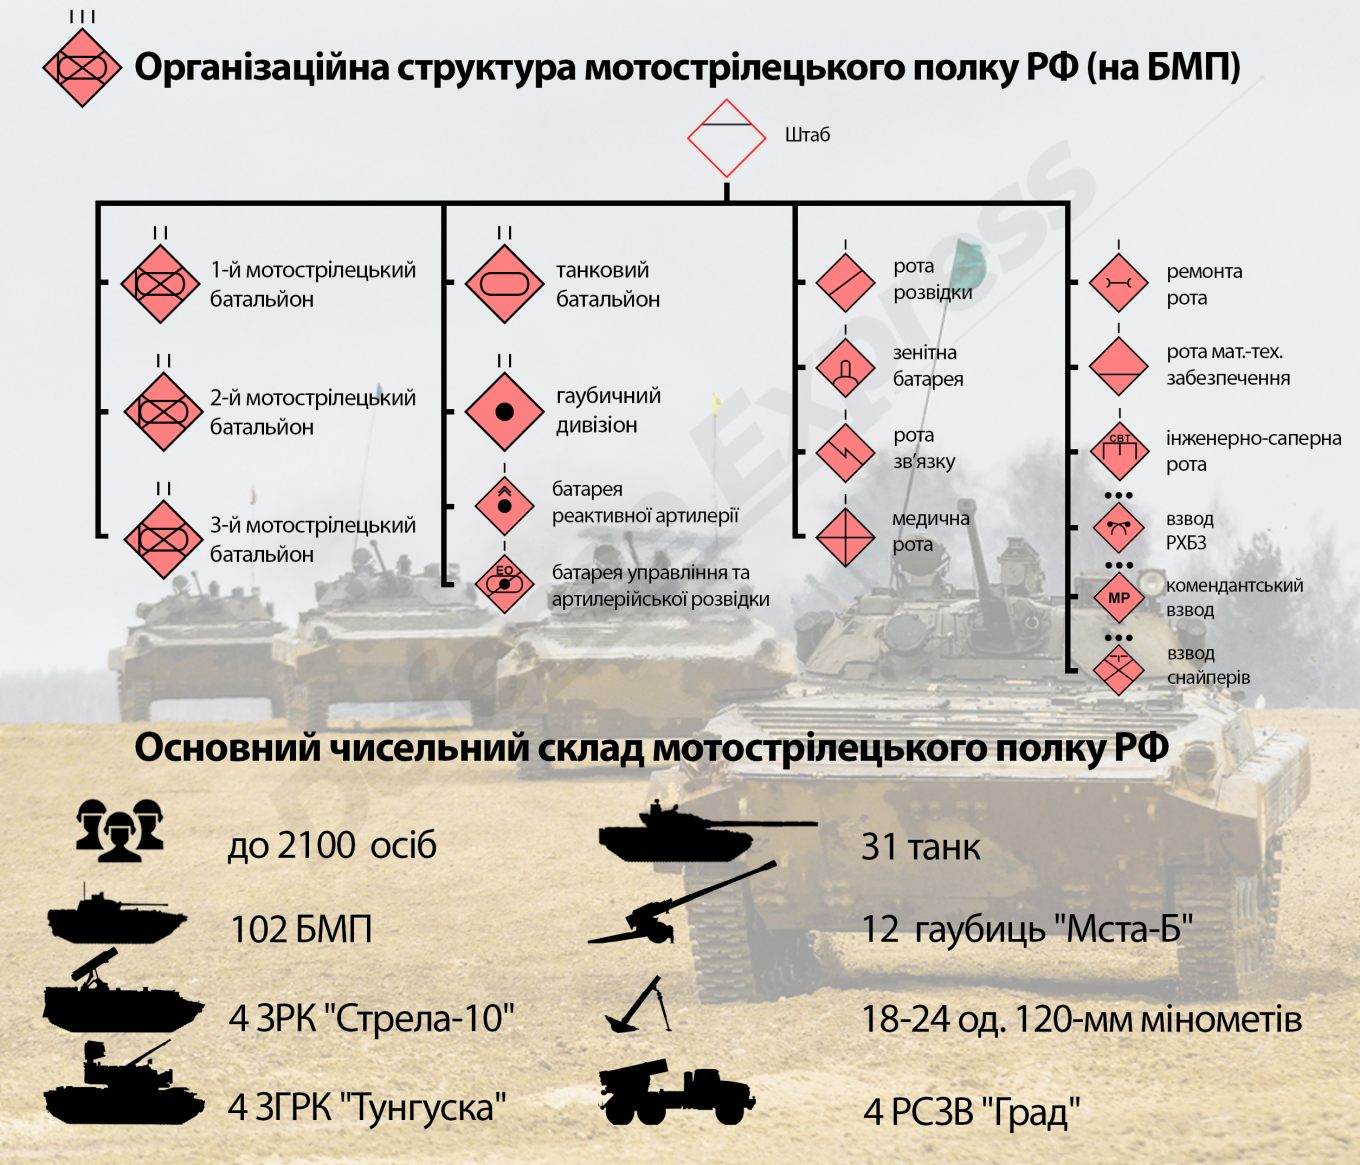 Організаційно-штатна структура мотострілецького полку армії РФ